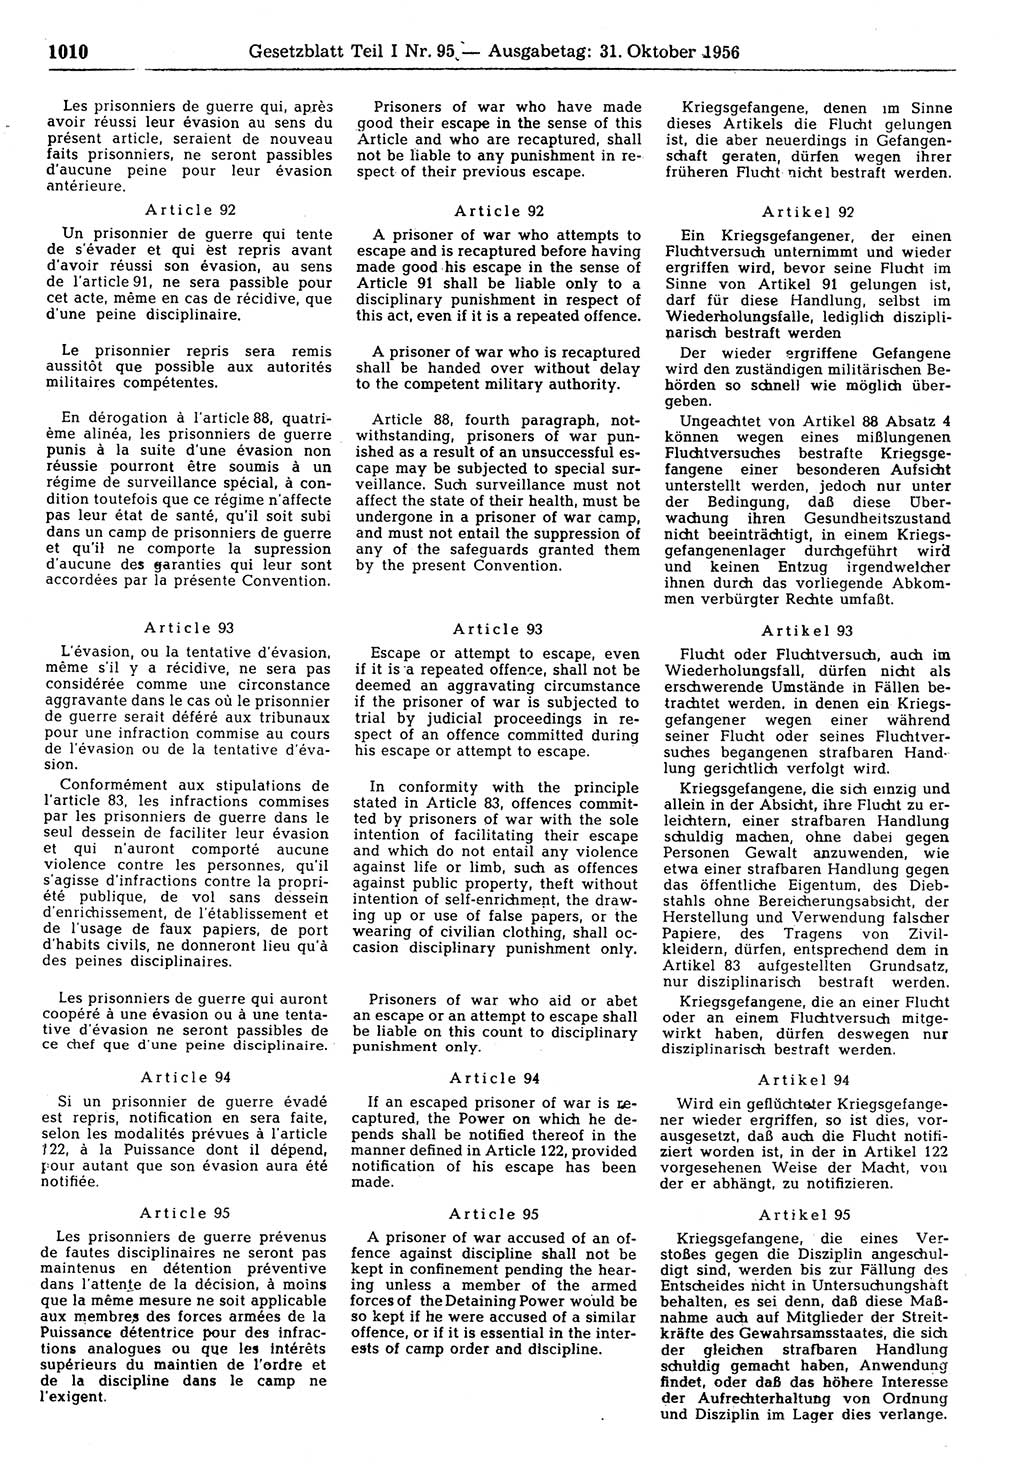 Gesetzblatt (GBl.) der Deutschen Demokratischen Republik (DDR) Teil Ⅰ 1956, Seite 1010 (GBl. DDR Ⅰ 1956, S. 1010)